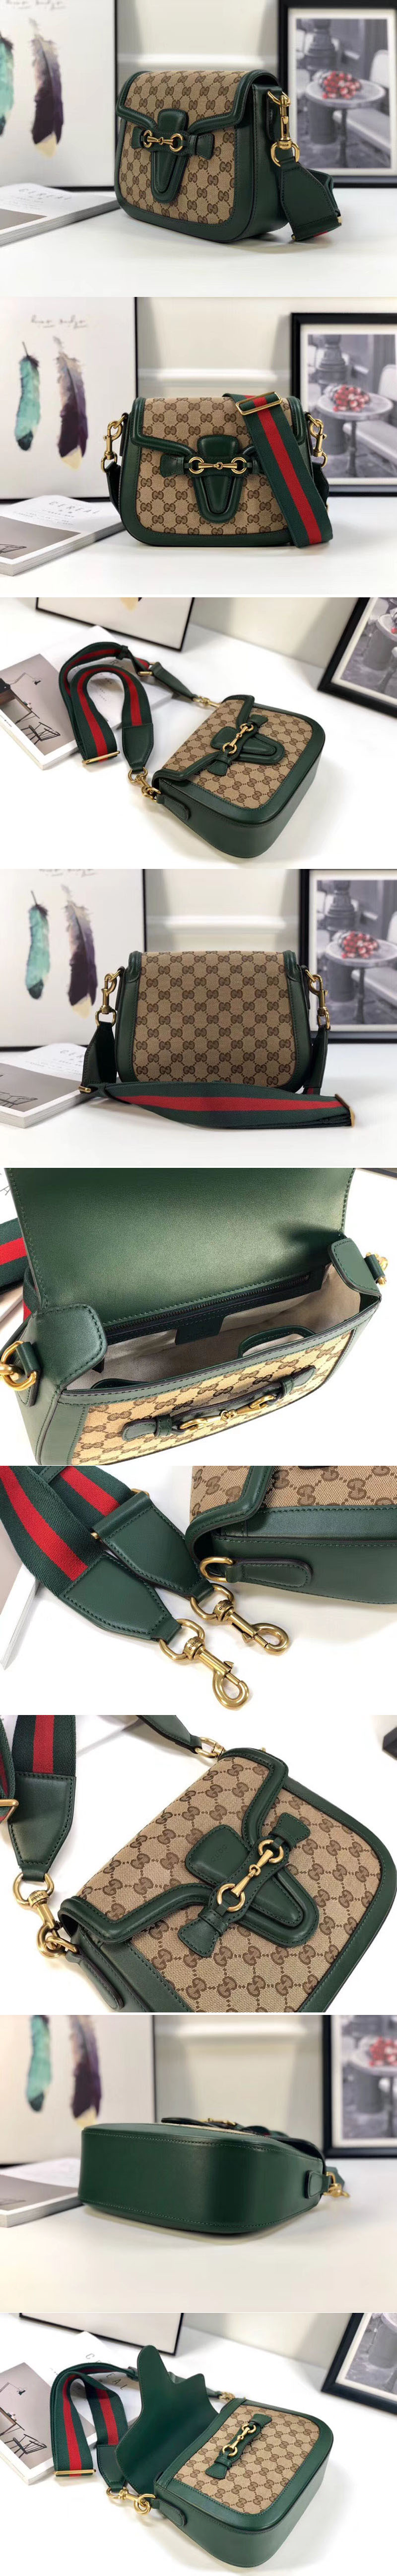 Replica Gucci 383848 Lady Web Original GG Canvas Shoulder Bag Green